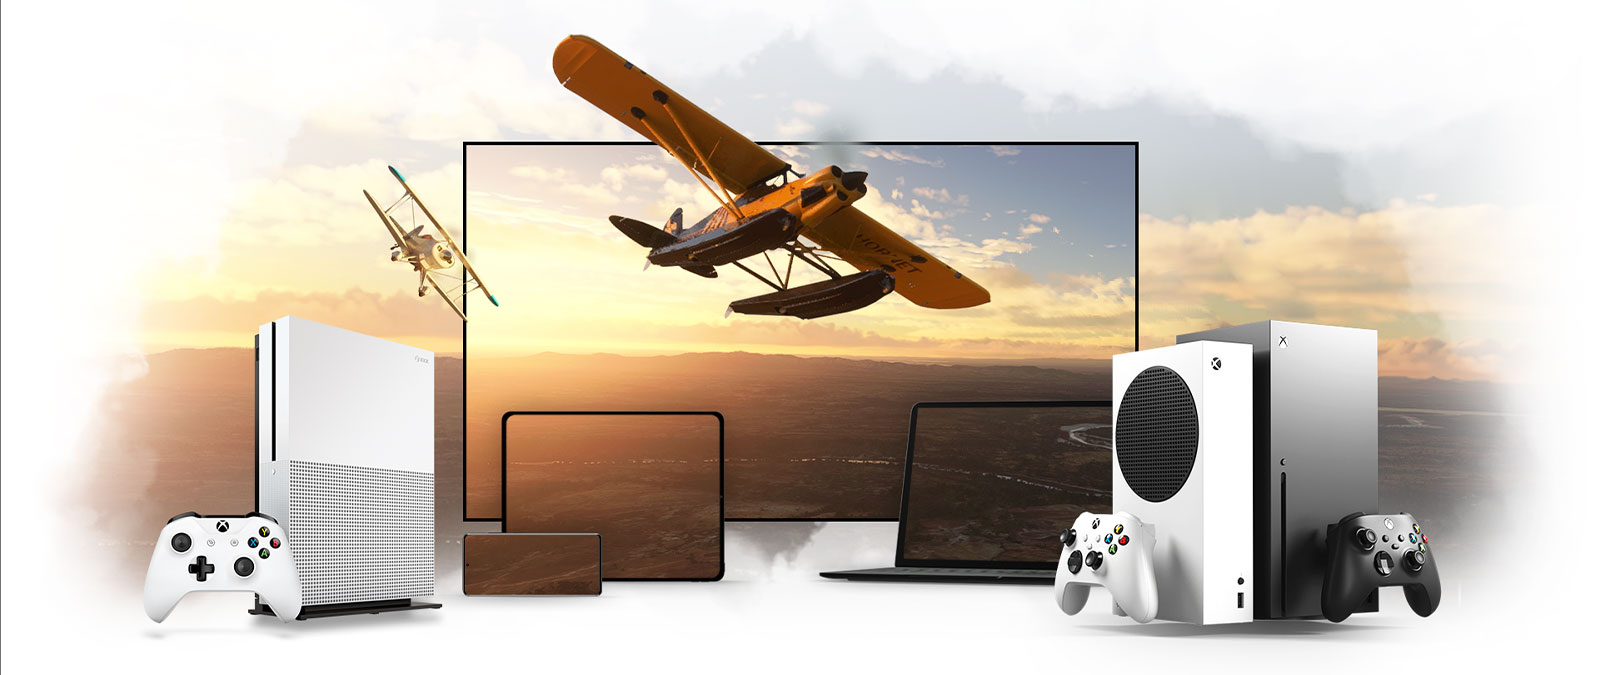 Laitemuodostelma, johon kuuluvat televisio, Xbox One ja Xbox Series X, potkurikone lentää matkoihinsa auringon valaisemasta horisontista.